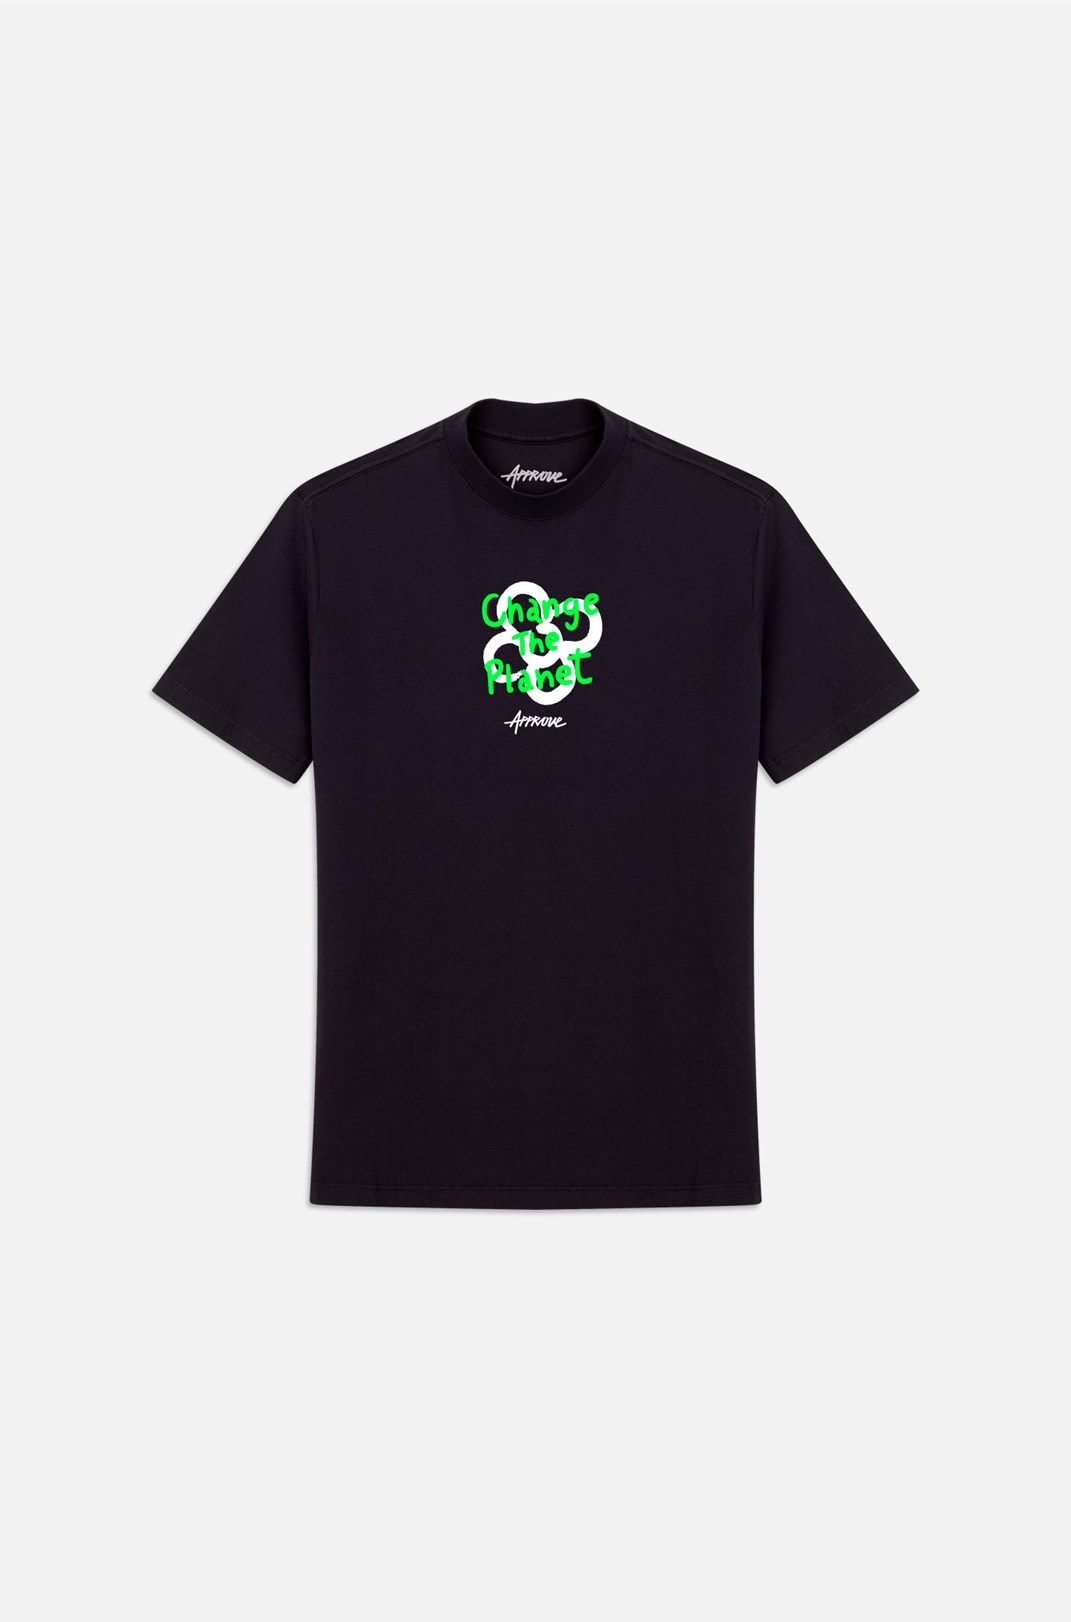 Camiseta Bold Approve Change The Planet Preta e Verde